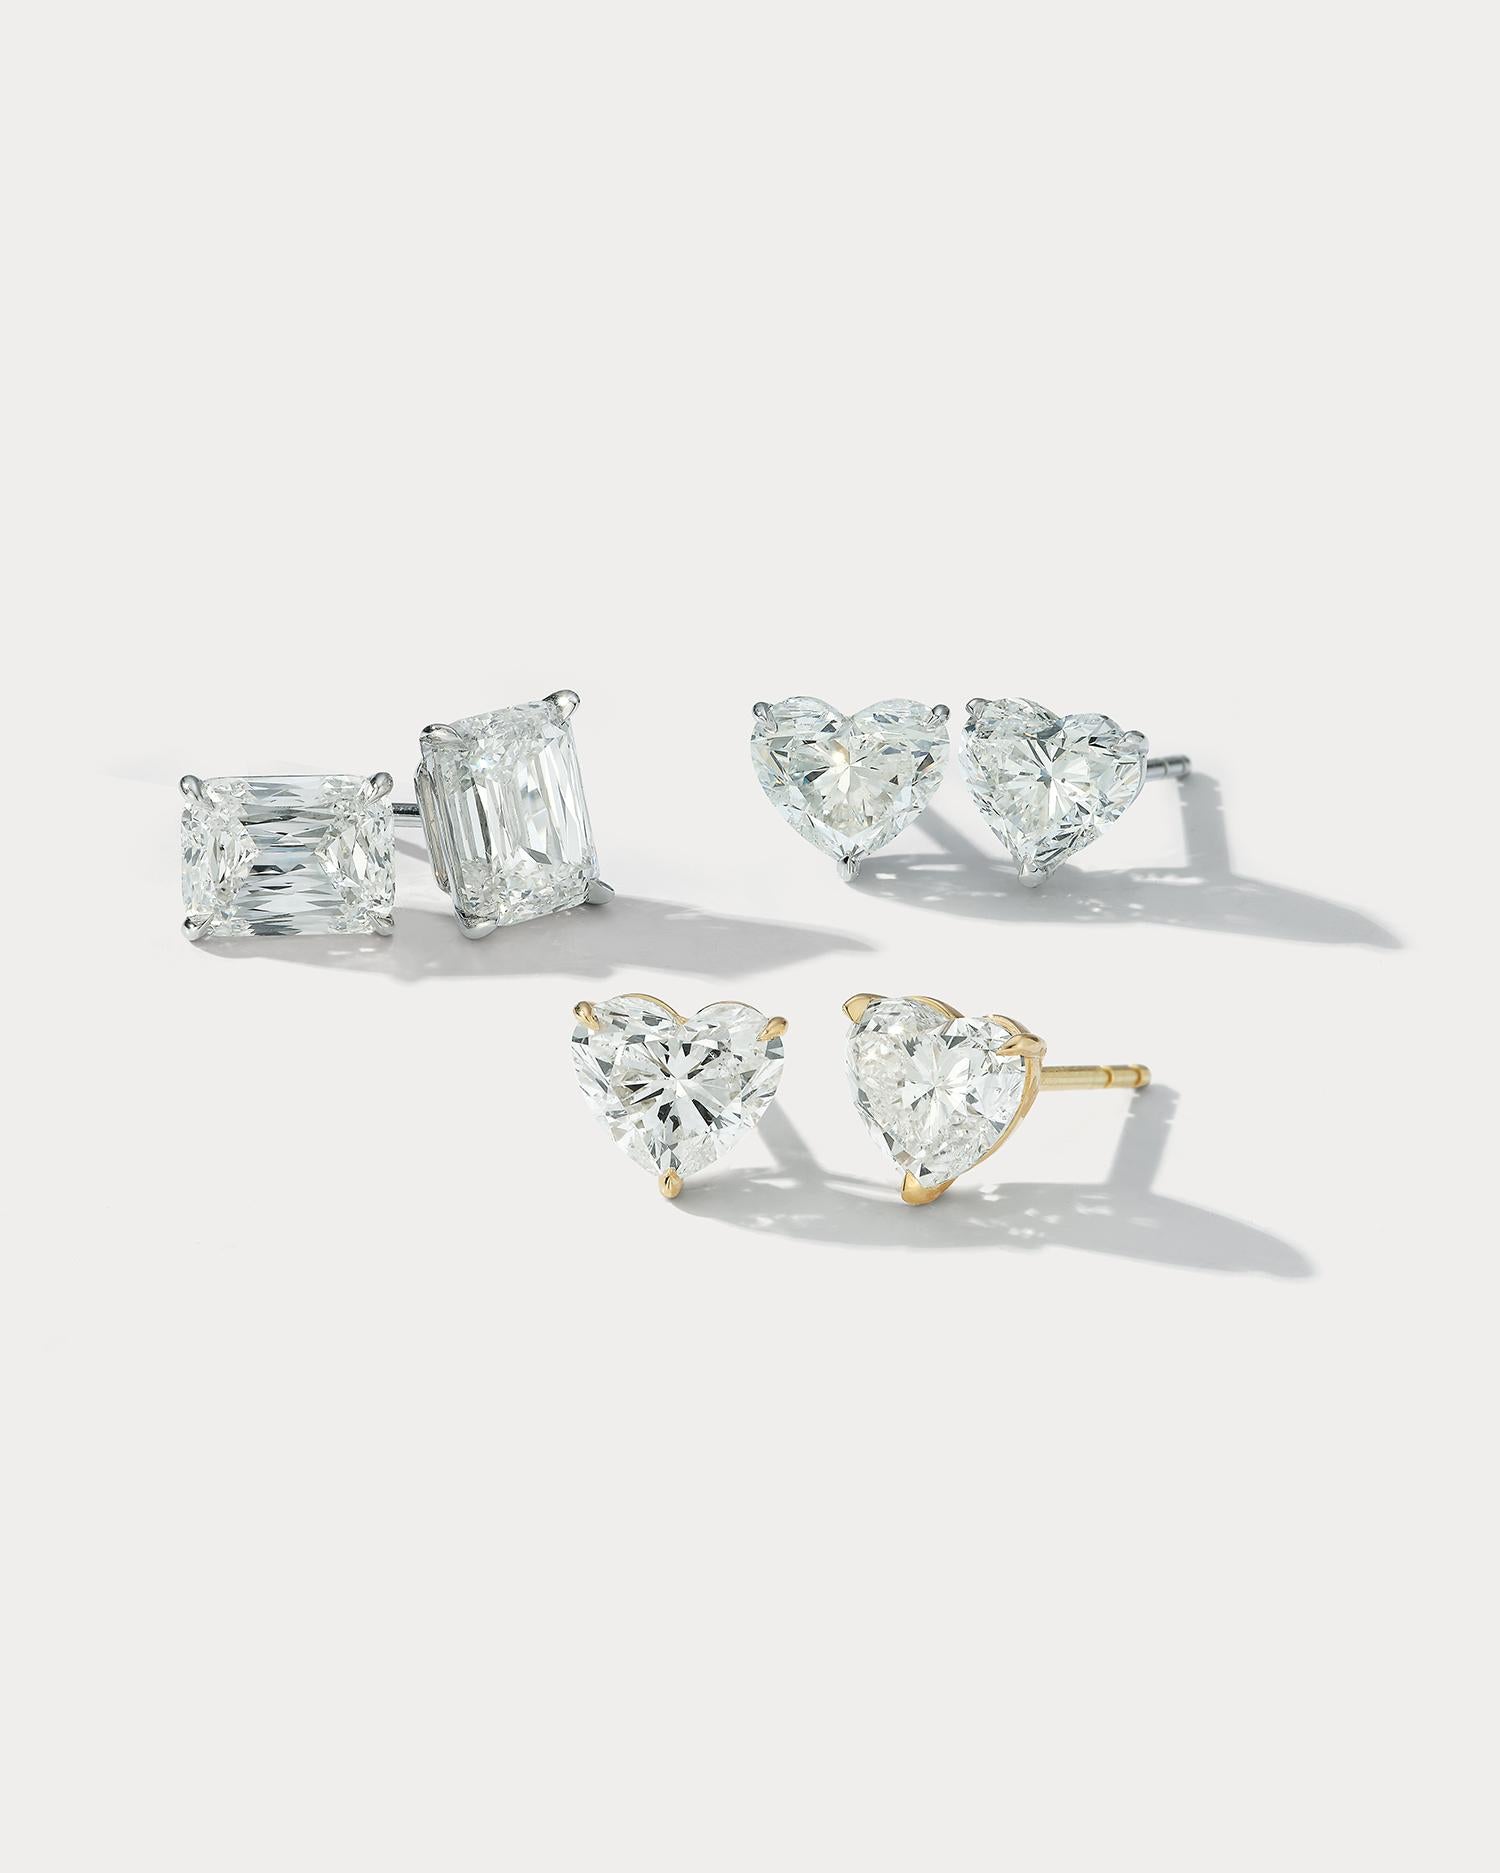 Hinterlassen Sie einen atemberaubenden Eindruck mit diesen wunderschönen 6-Karat-Diamant-Ohrsteckern mit Kissenschliff. Die Steine im Kissenschliff sind so proportioniert, dass sie bei jeder Bewegung das Licht einfangen und ein atemberaubendes